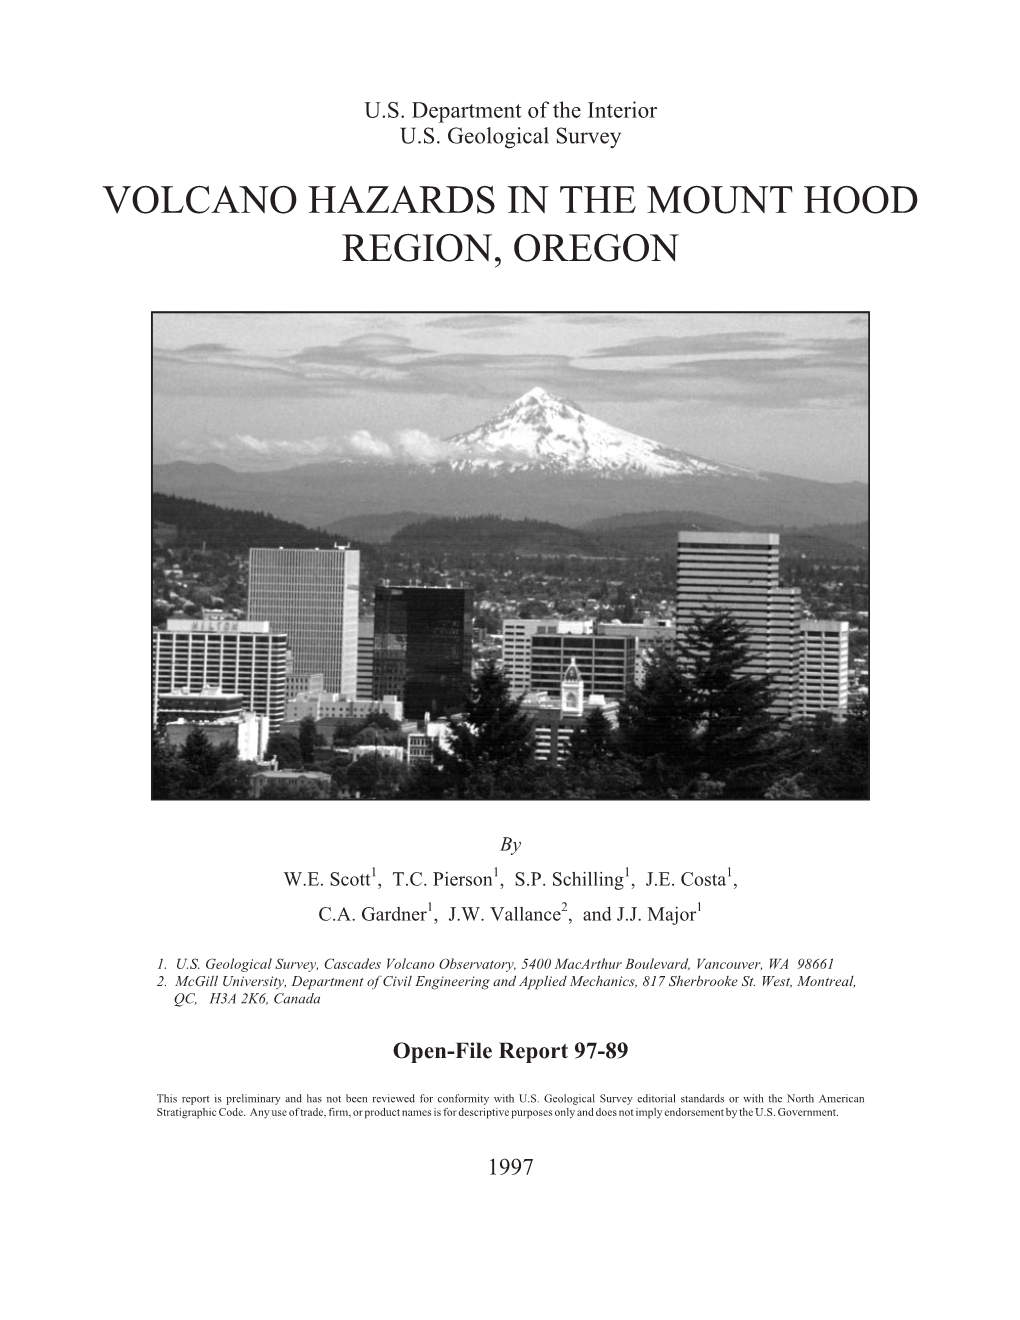 Volcano Hazards in the Mount Hood Region, Oregon